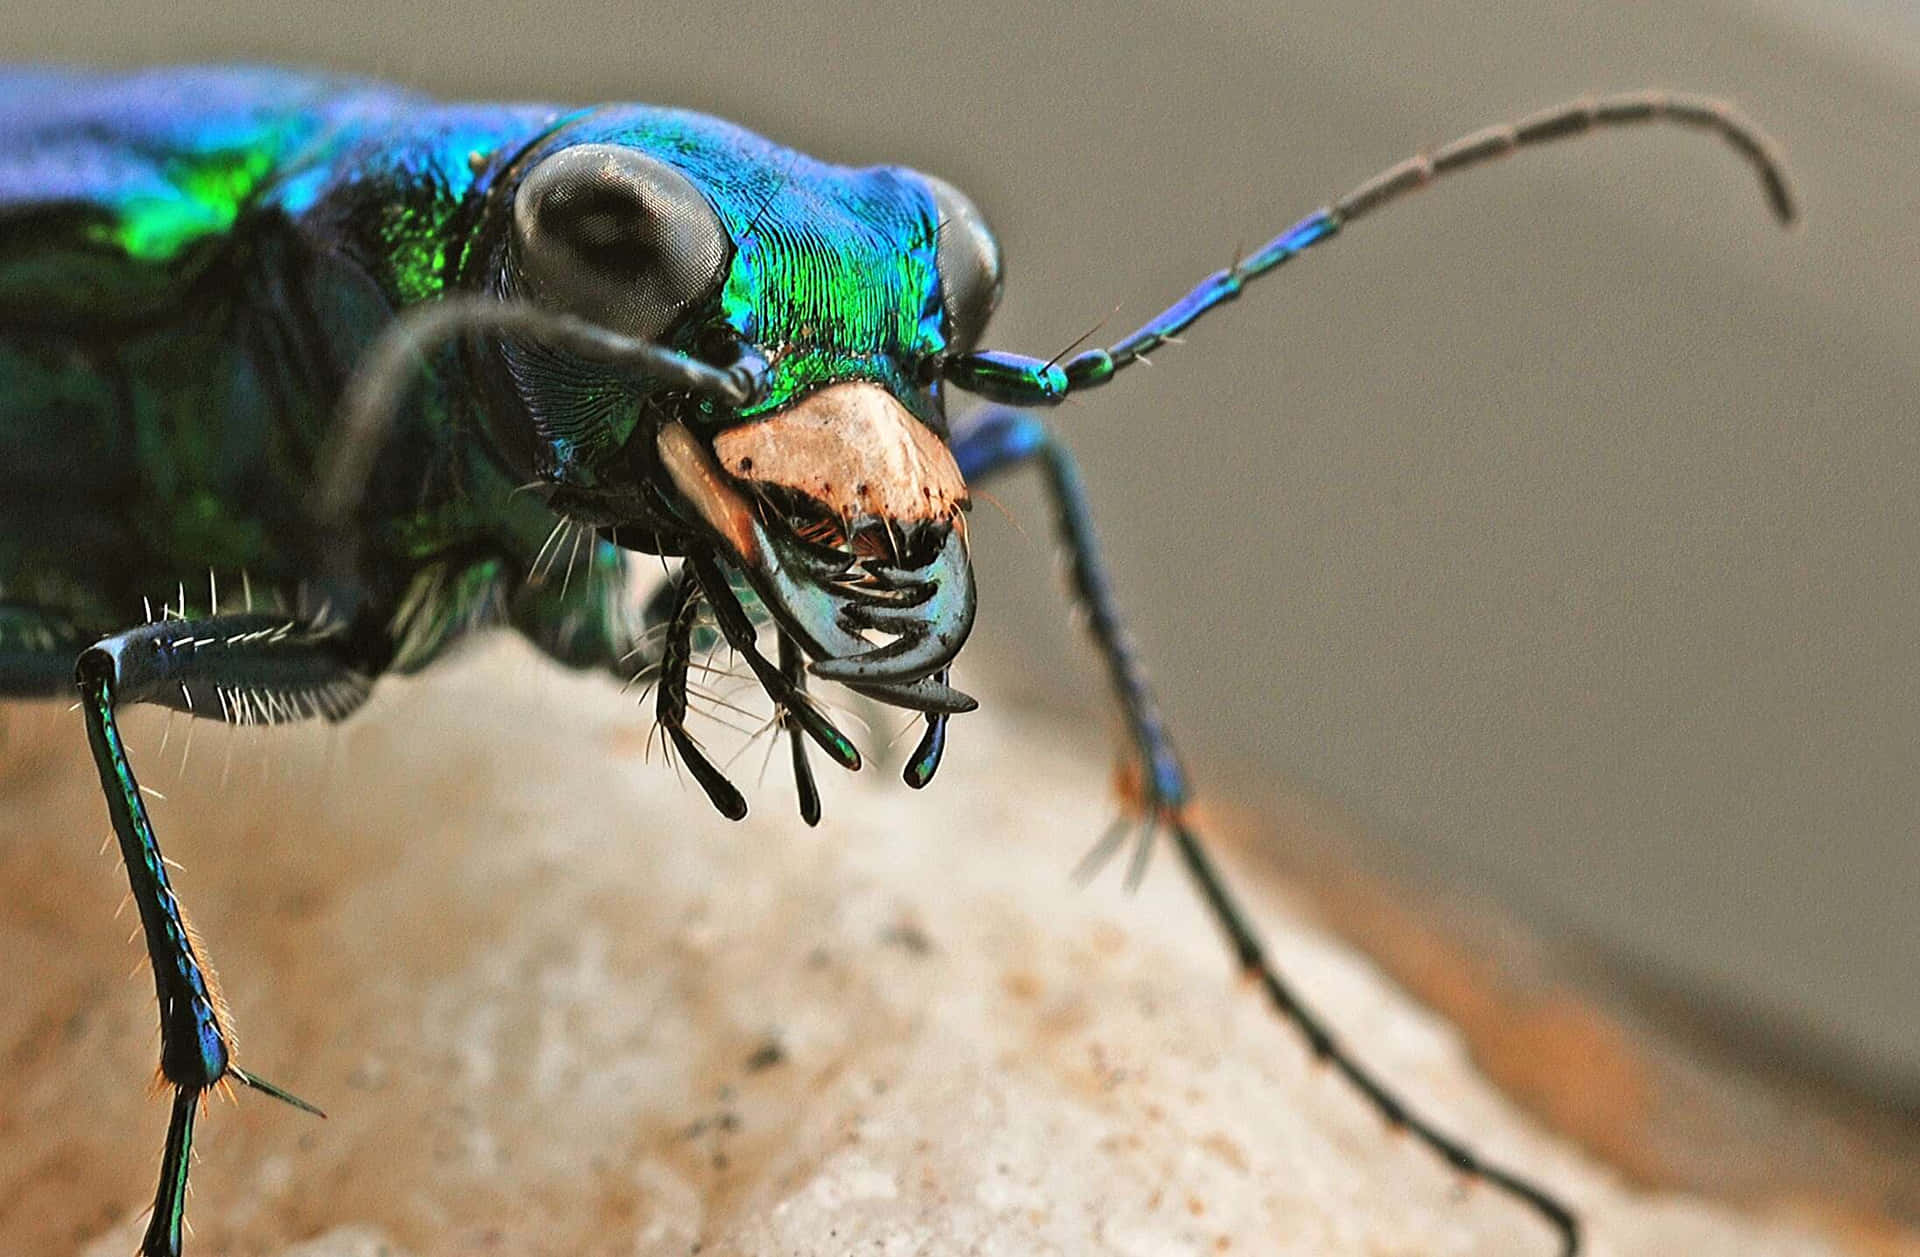 Vibrant Tiger Beetle Closeup.jpg Wallpaper